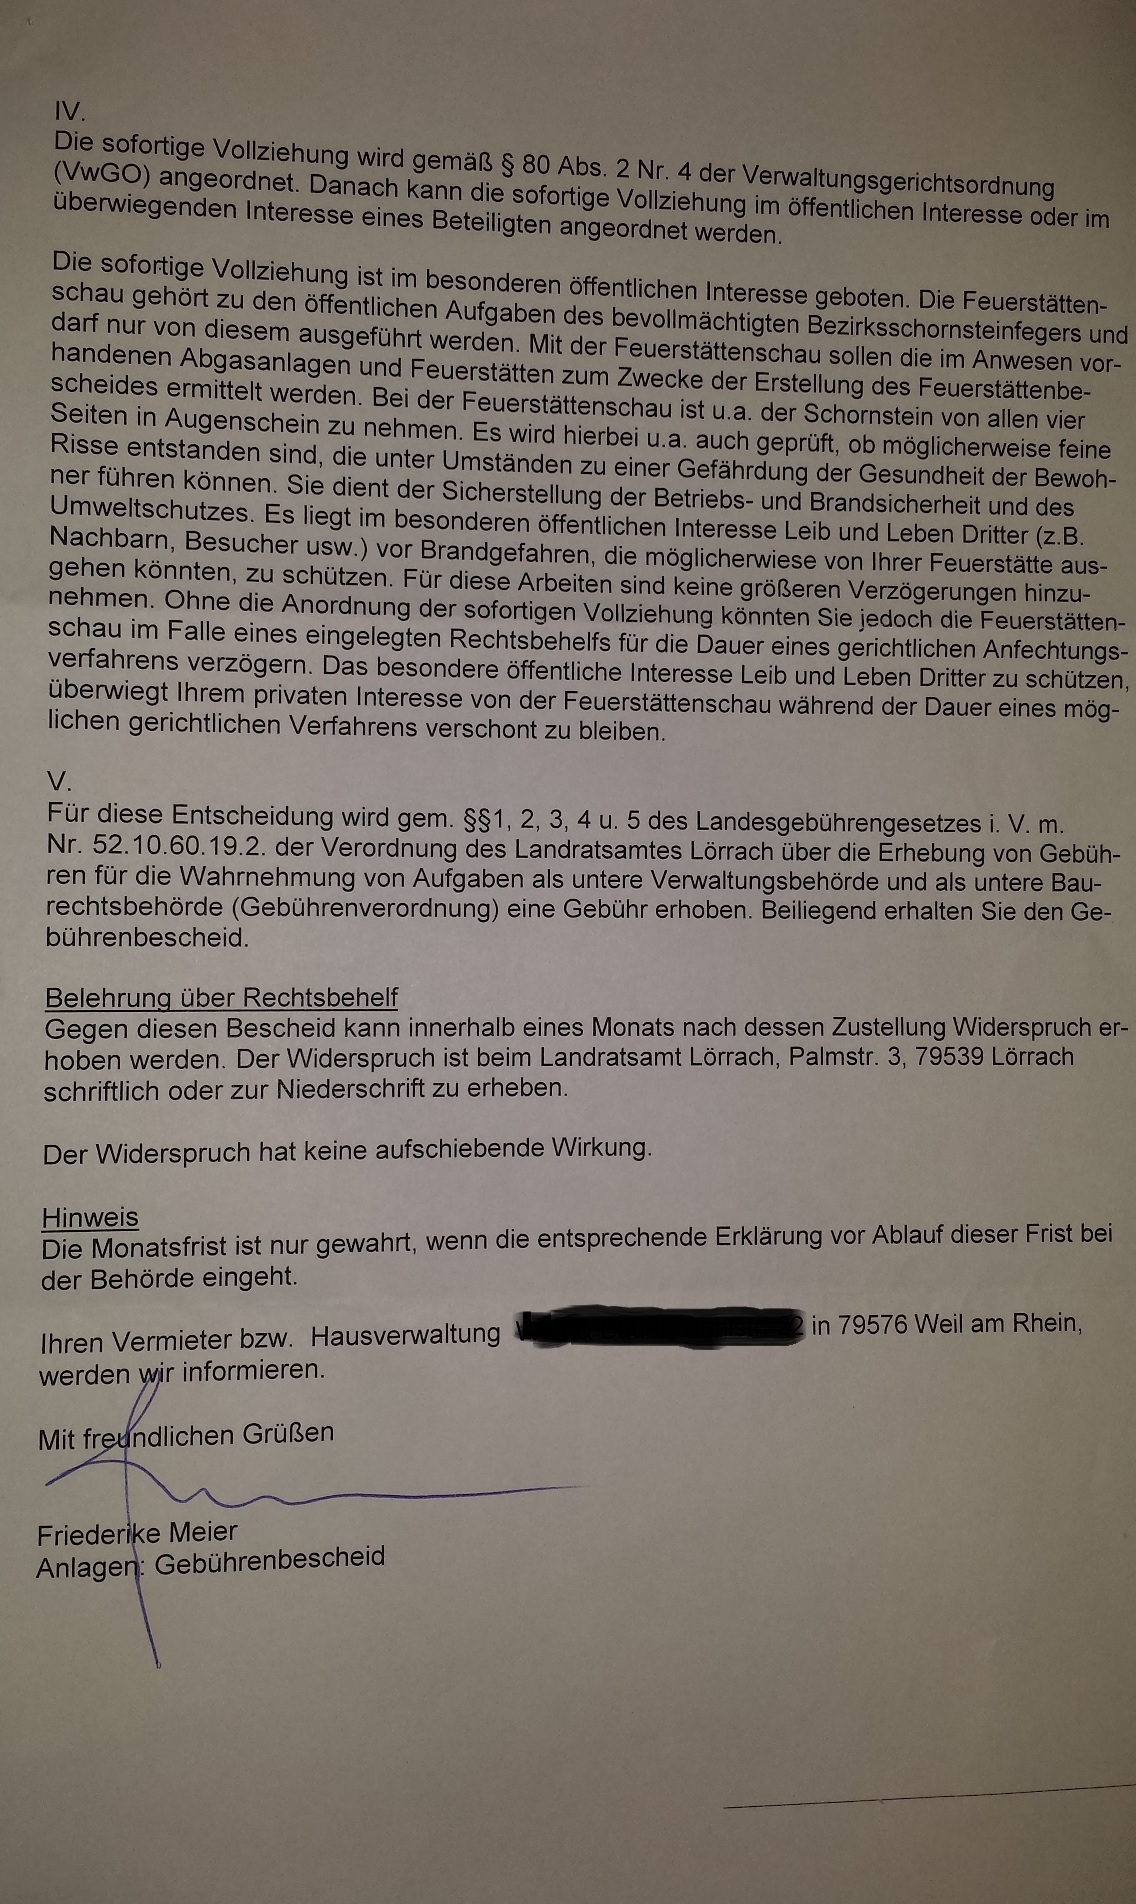 LRAL Baurecht Anschreiben Friederike Meier 20150123 p3